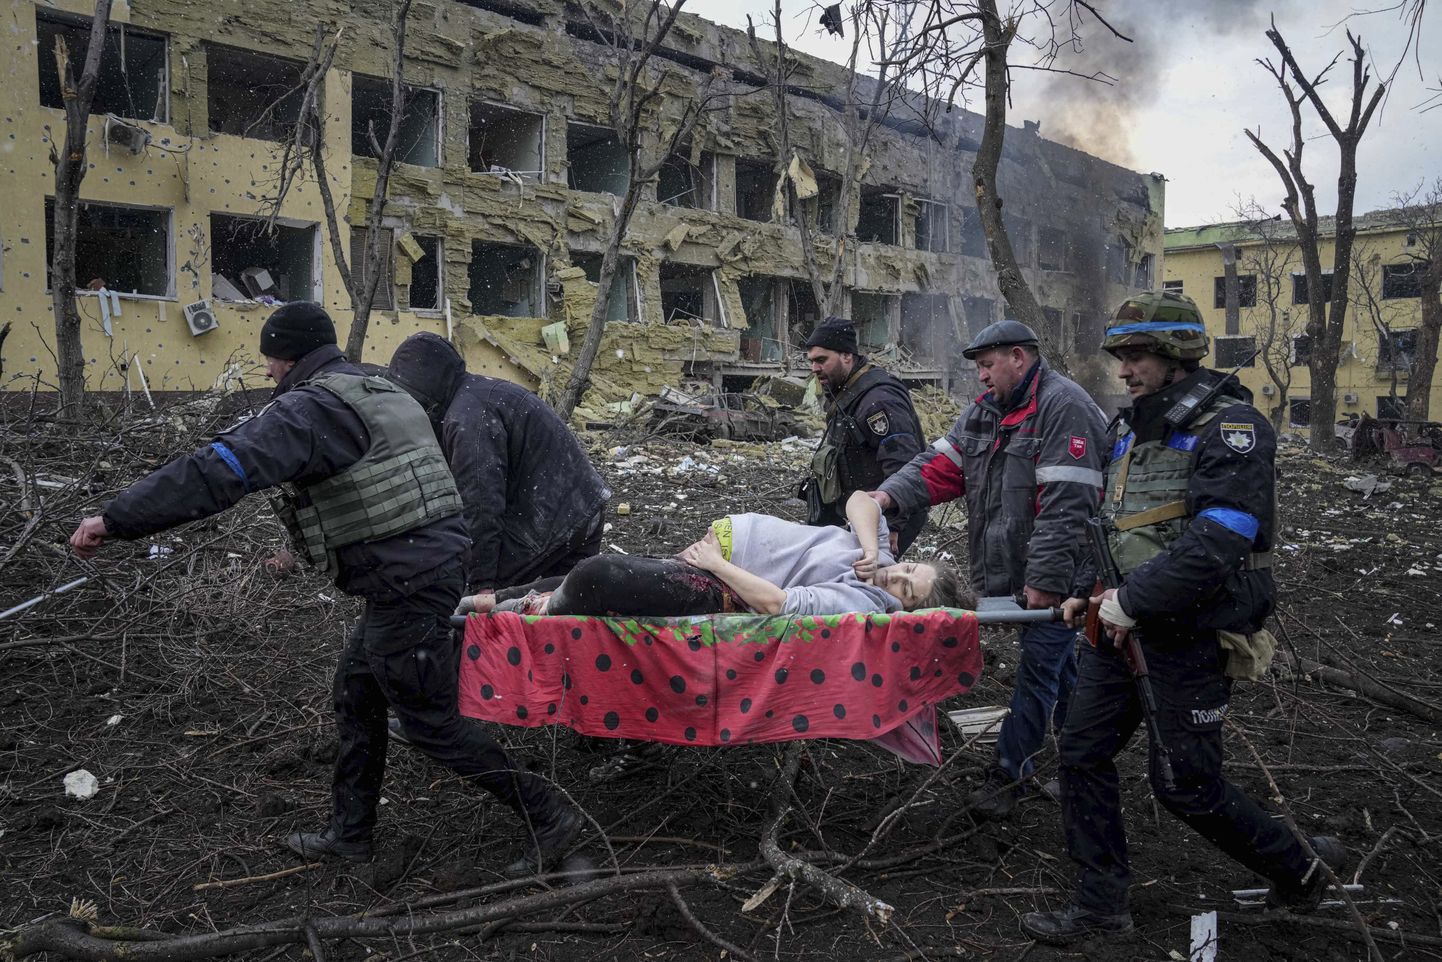 Vene väed alustasid Ukraina anastamist 24. veebruaril ja on nüüdseks Ukraina lõunaosas asuva Mariupoli ümber piiranud. Venemaa rünnakus hävines ka Mariupoli sünnitushaigla. Pildil transpordivad päästetöötajad selles haiglas olnud rasedat naist. Hiljem tuli teade, et naine ja seega ka ta laps surid